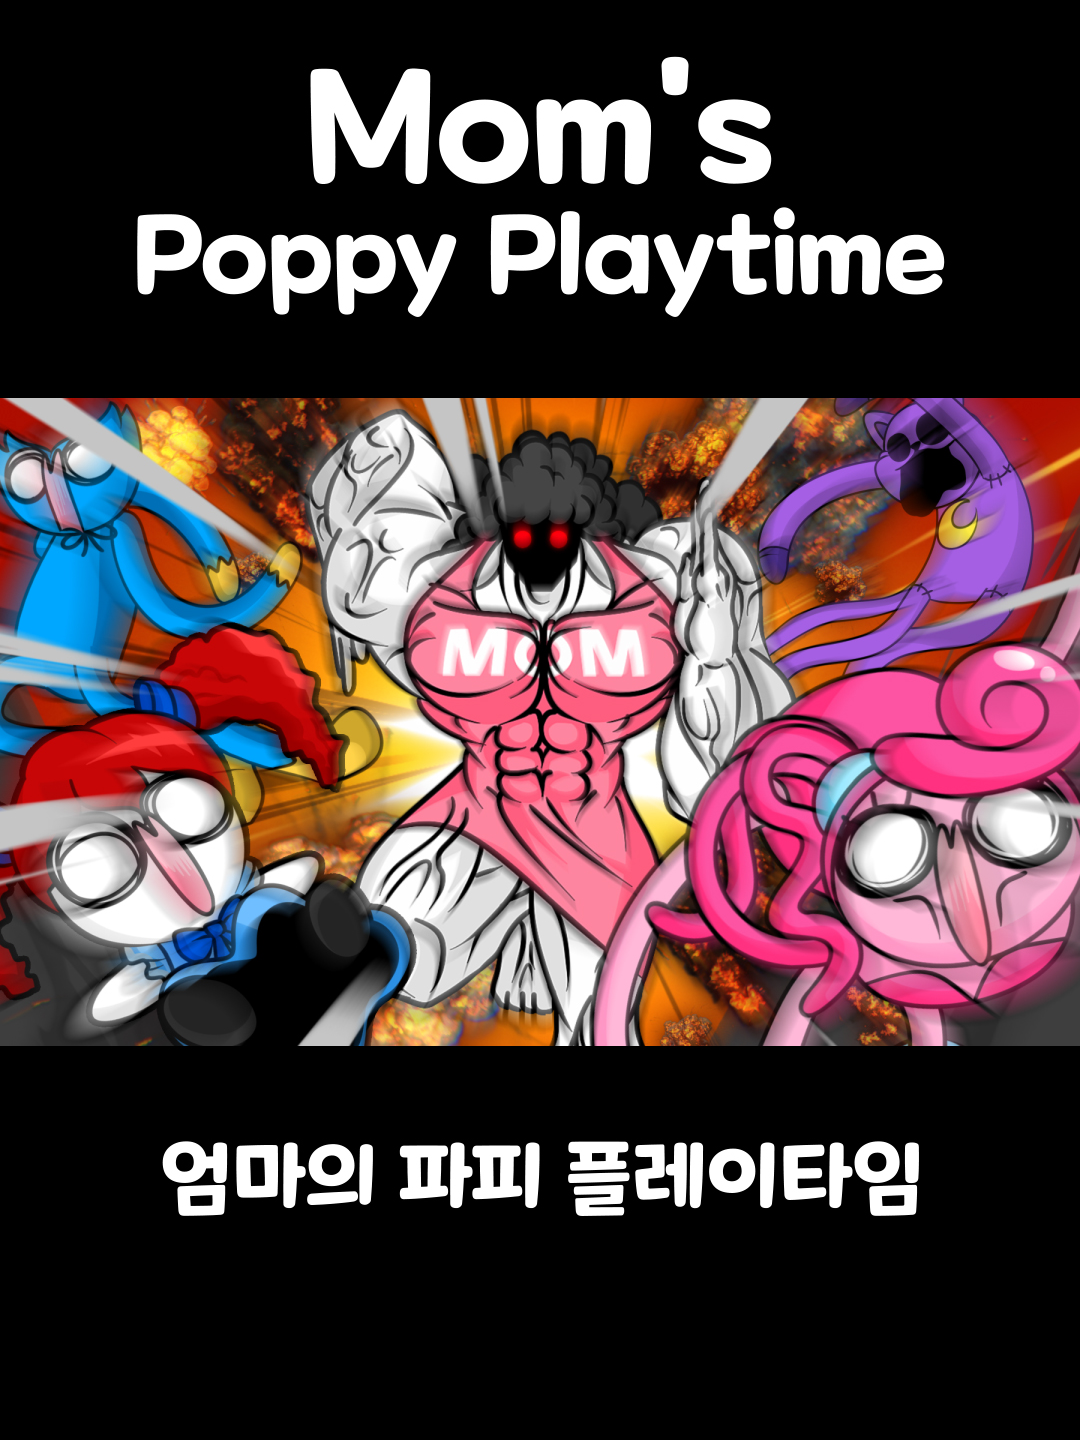 엄마의 파피 플레이타임 [Mom's Poppy Playtime] #somacguffin #funny #anime #meme #poppyplaytime